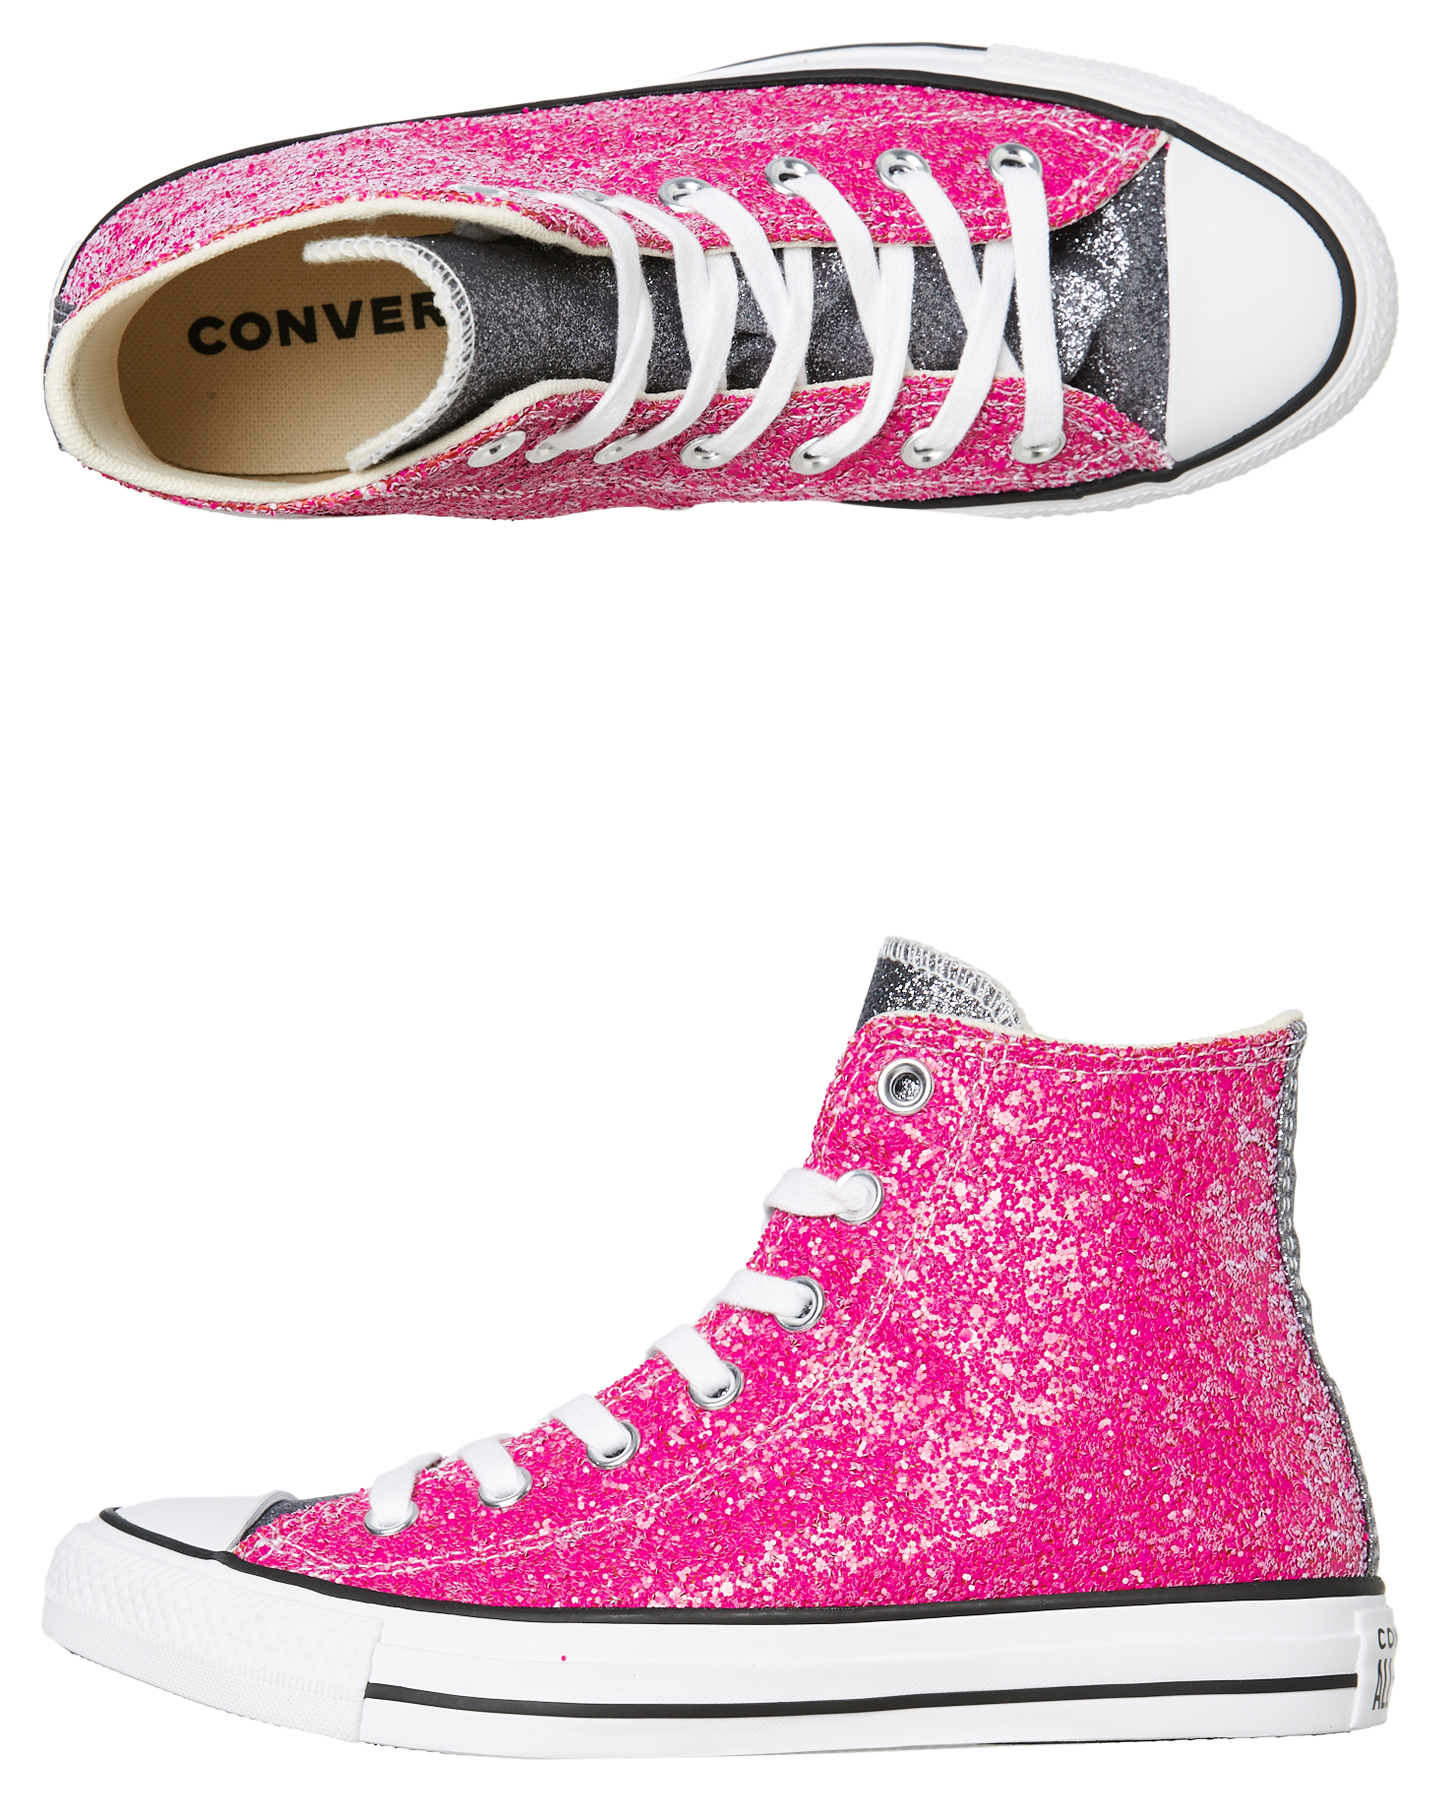 Converse Womens Chuck Taylor All Star Glitter Hi Shoe Pink Surfstitch